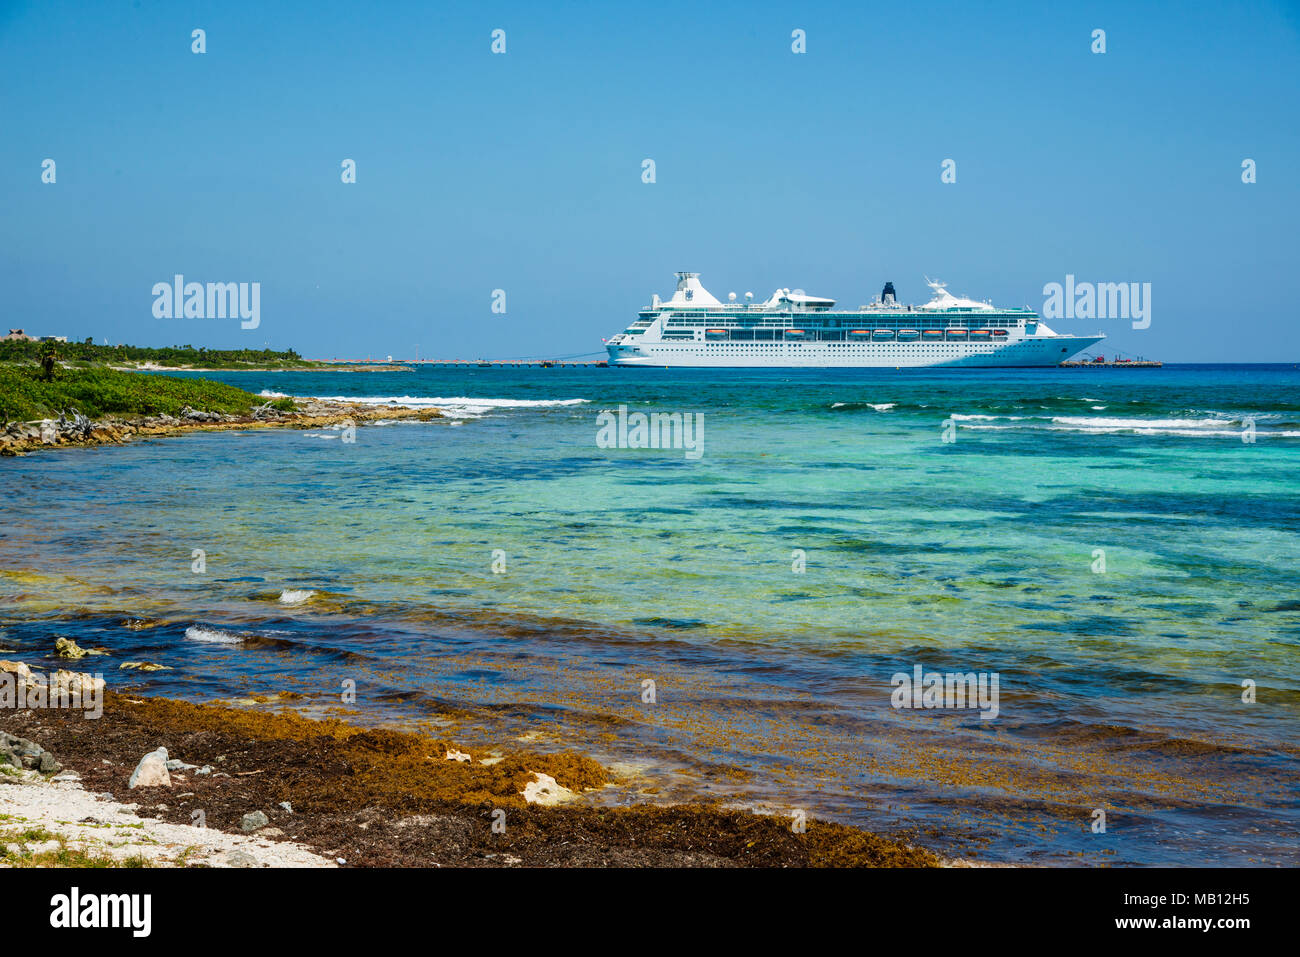 Cruise shipThe destino de Cruceros Costa Maya México América es una parada popular en el Caribe Occidental crucero tour y ofrece tiendas y otras Foto de stock